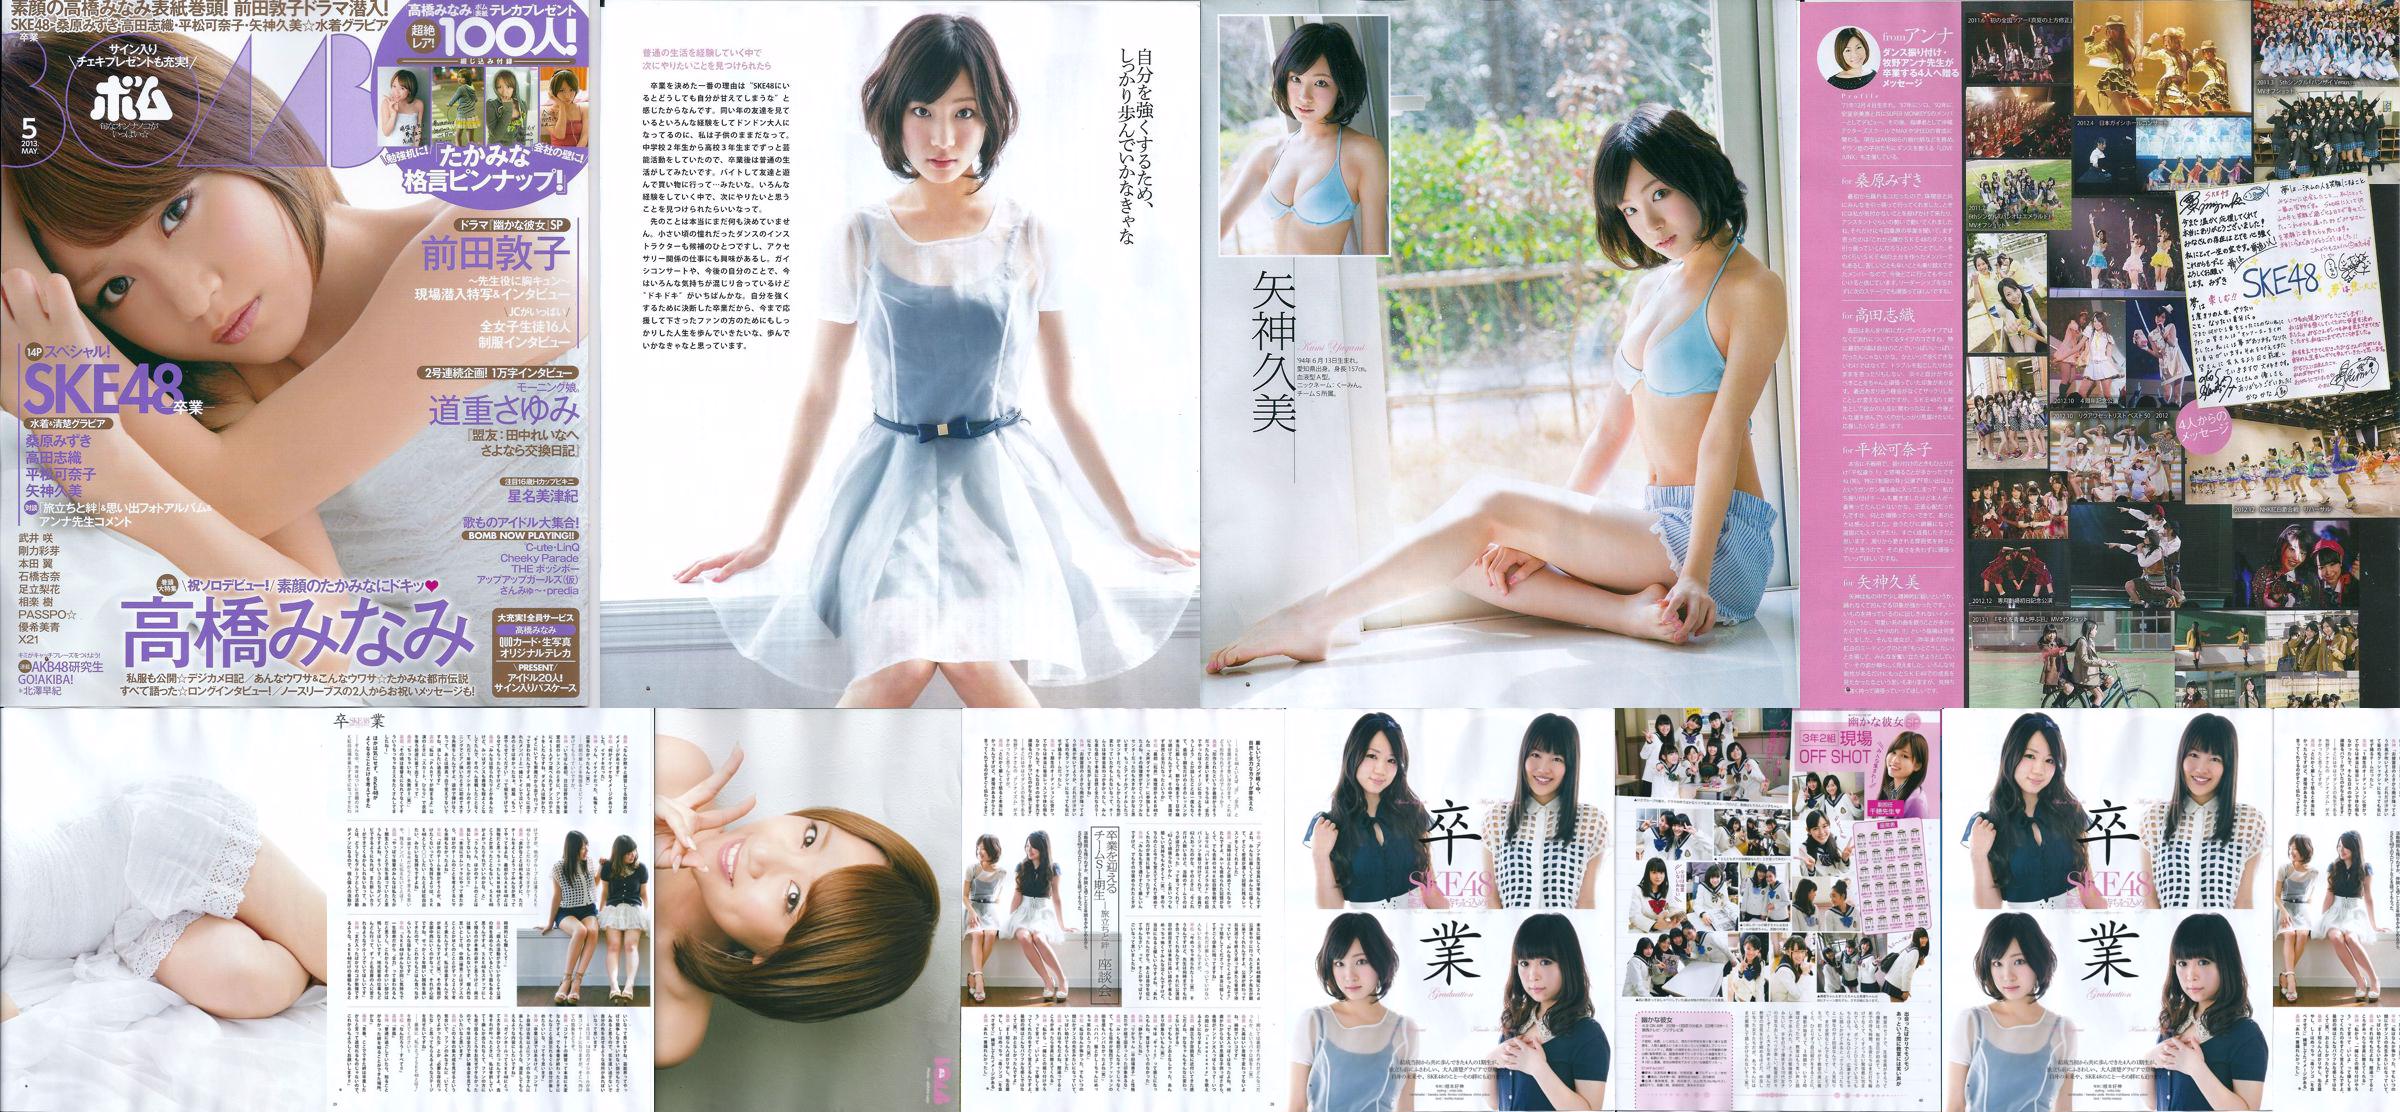 [Bomb Magazine] 2013 No.05 Kumi Yagami Minami Takahashi Atsuko Maeda Foto No.6f788a Página 3